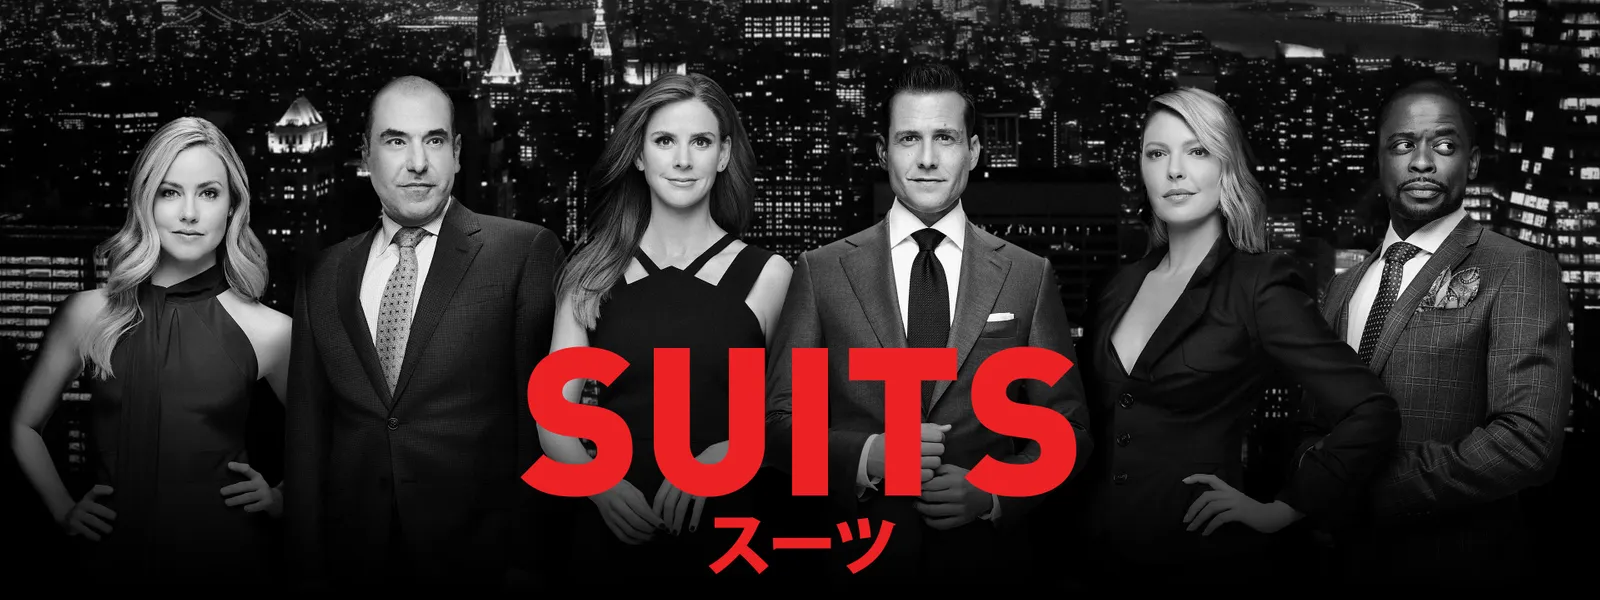 Suits スーツ シーズン7全話の動画を無料視聴できる配信サイト Vodリッチ